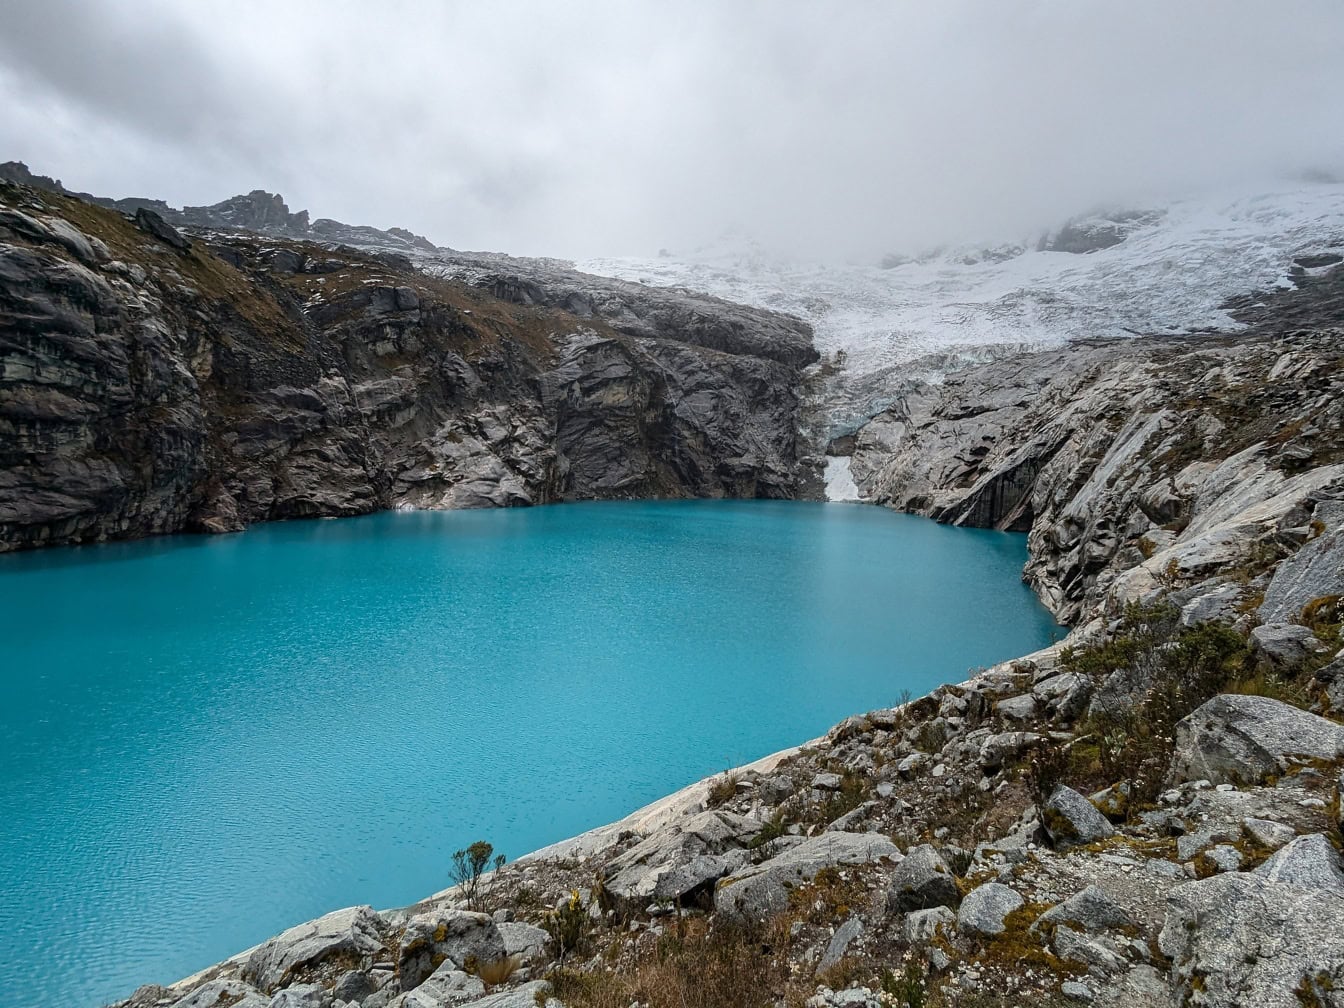 Colore blu turchese del lago 513 ai piedi della montagna Nevado Hualcan nel parco nazionale di Huascaran in Perù